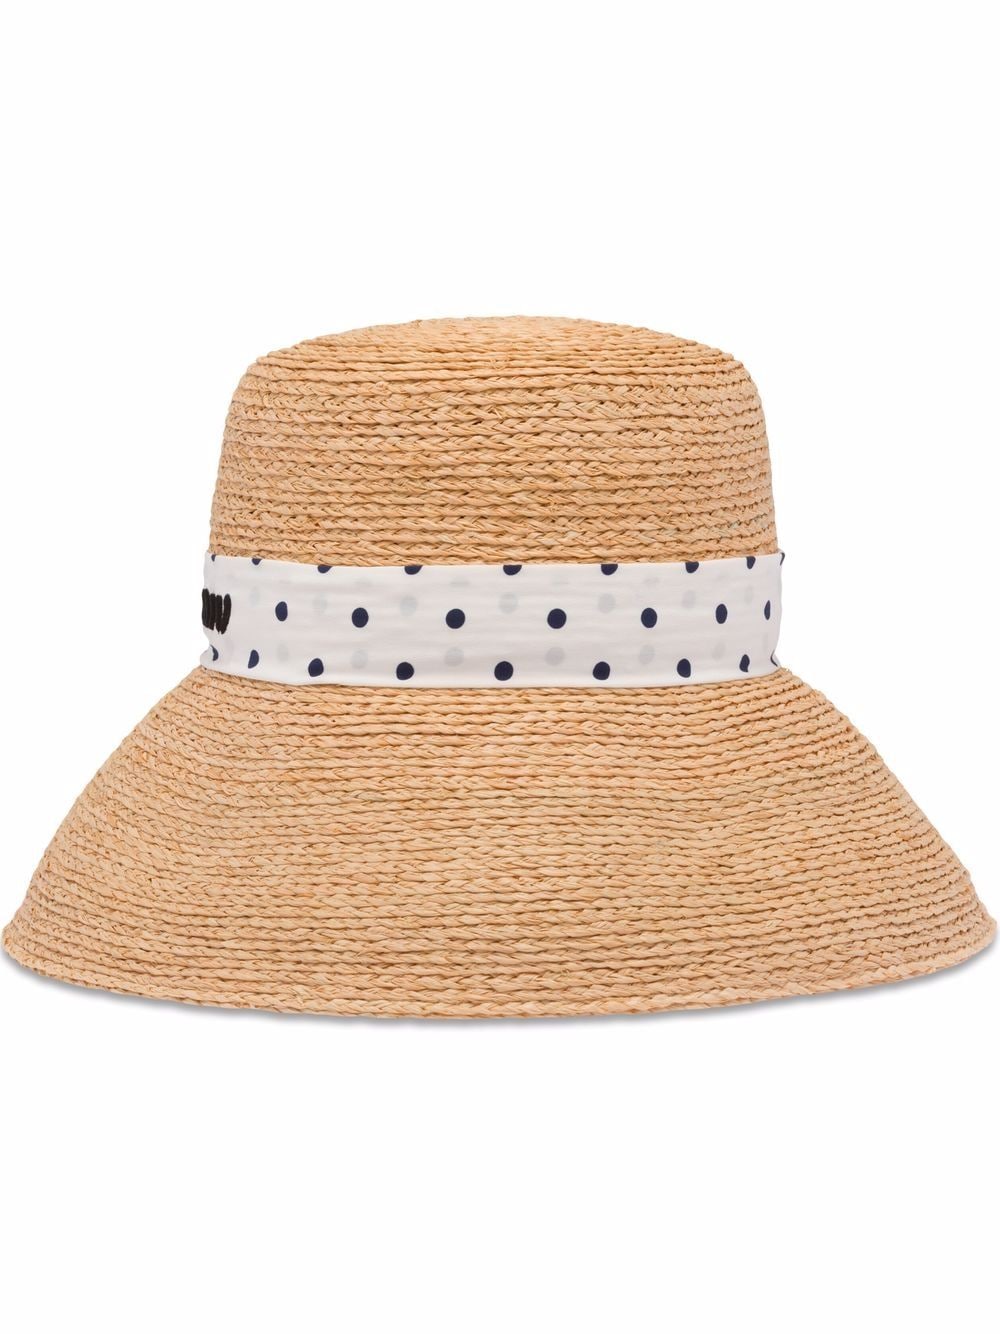 Miu Miu - logo-print straw sun hat - women - Straw/Silk - S - Neutrals